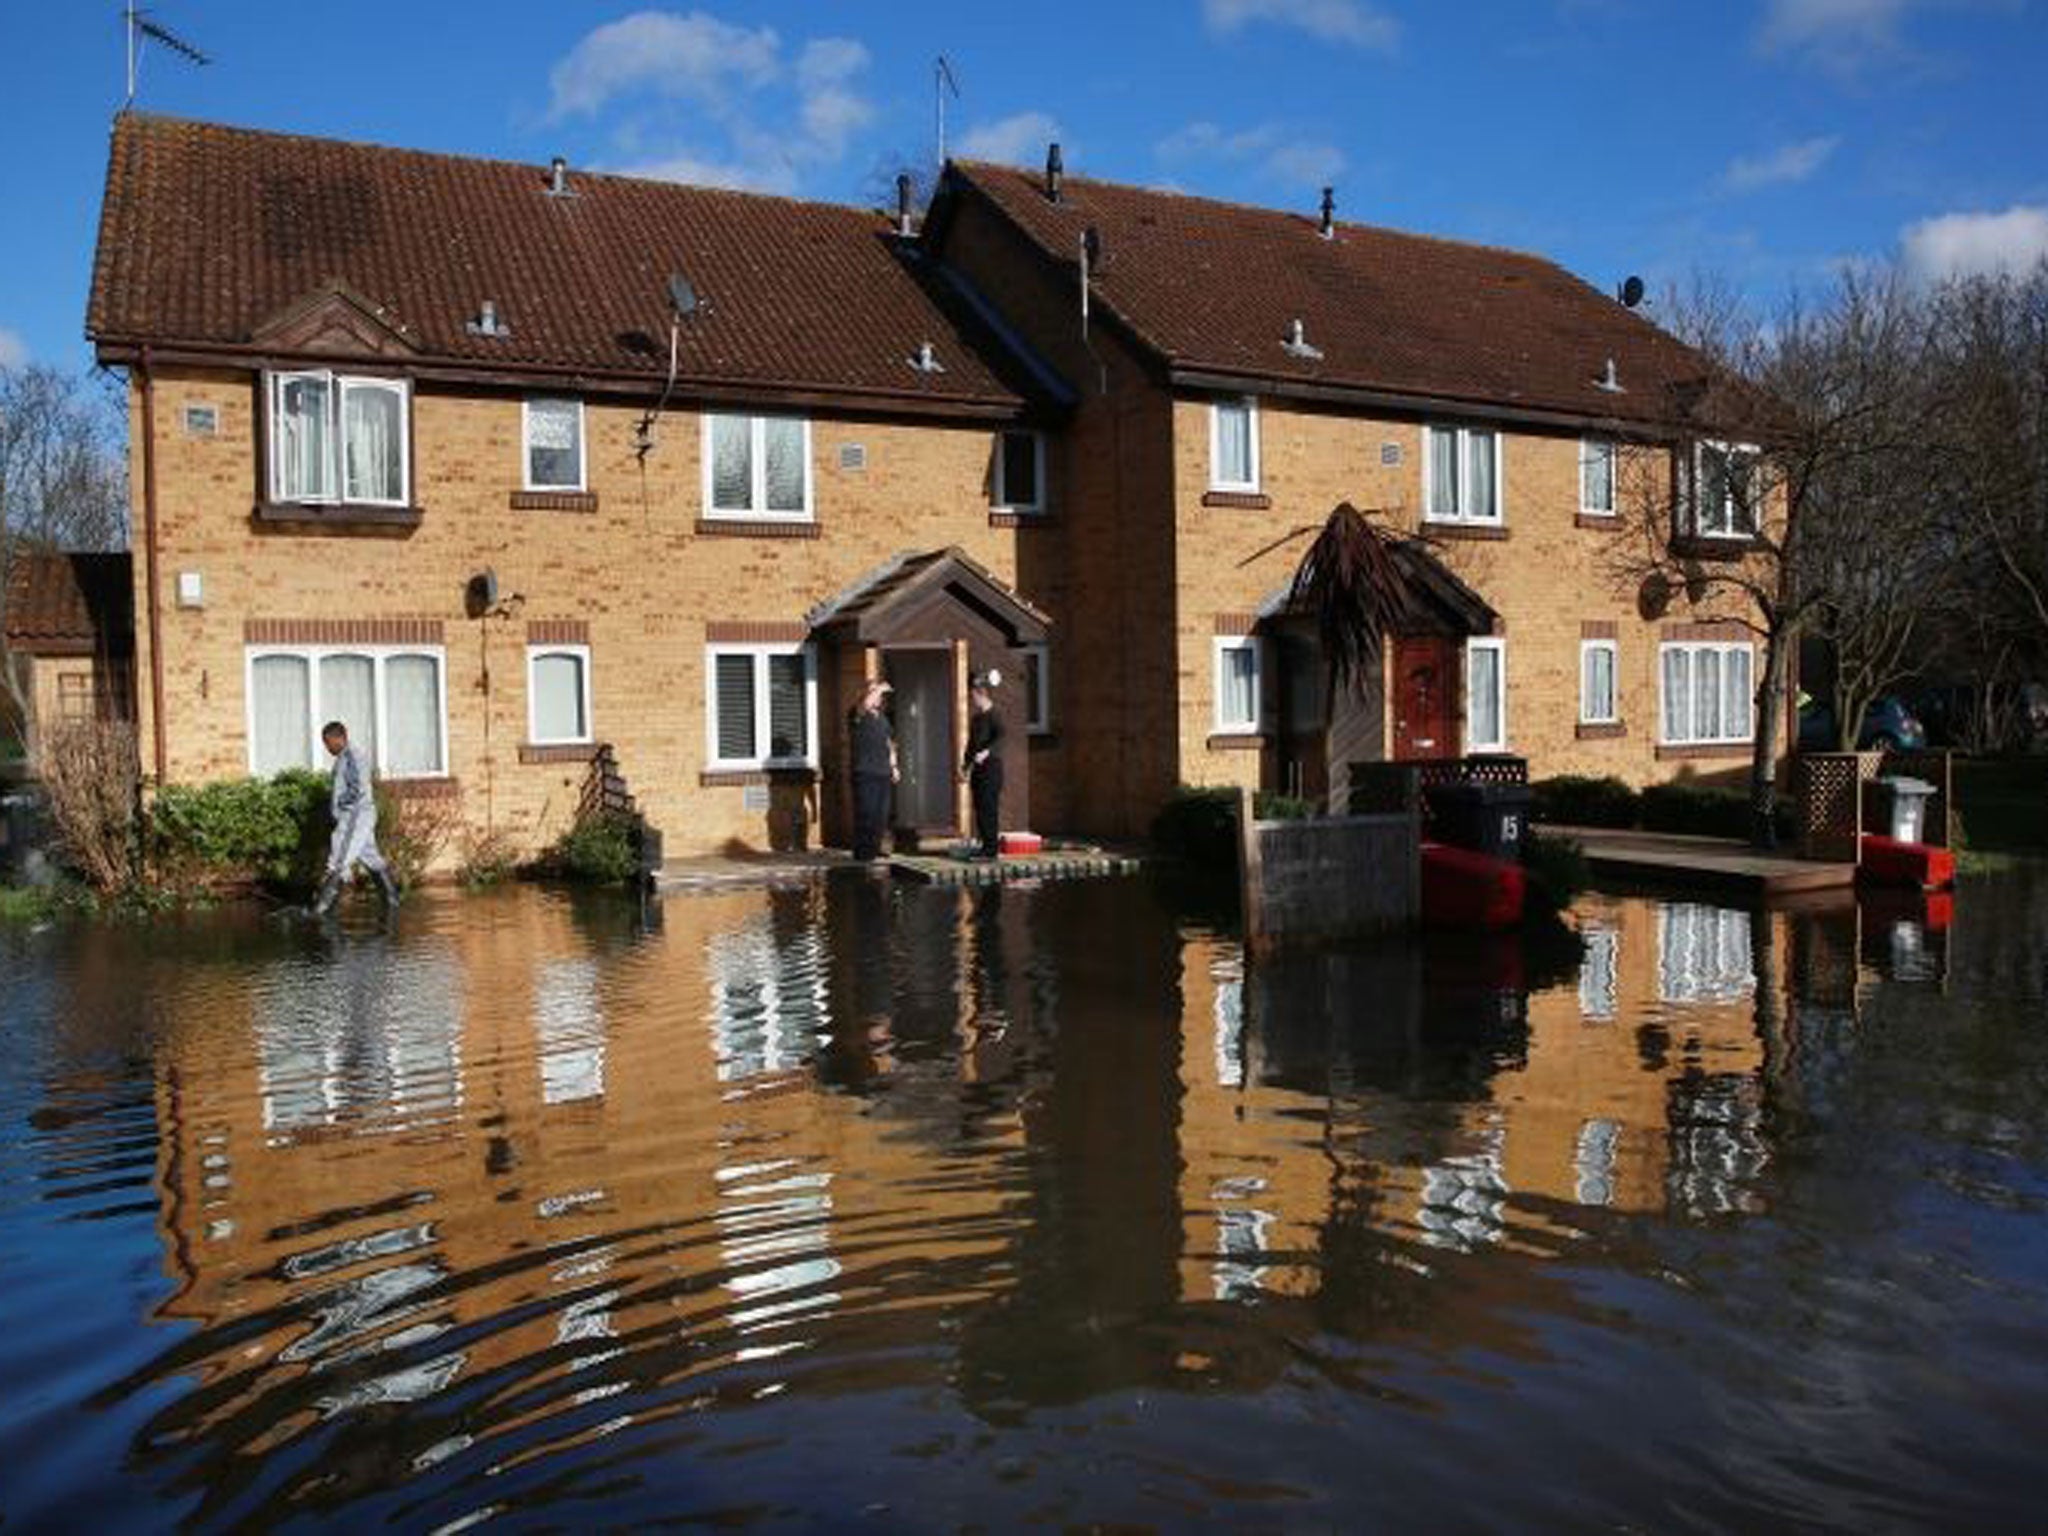 Houses are still being built on floodplains - despite expert warnings